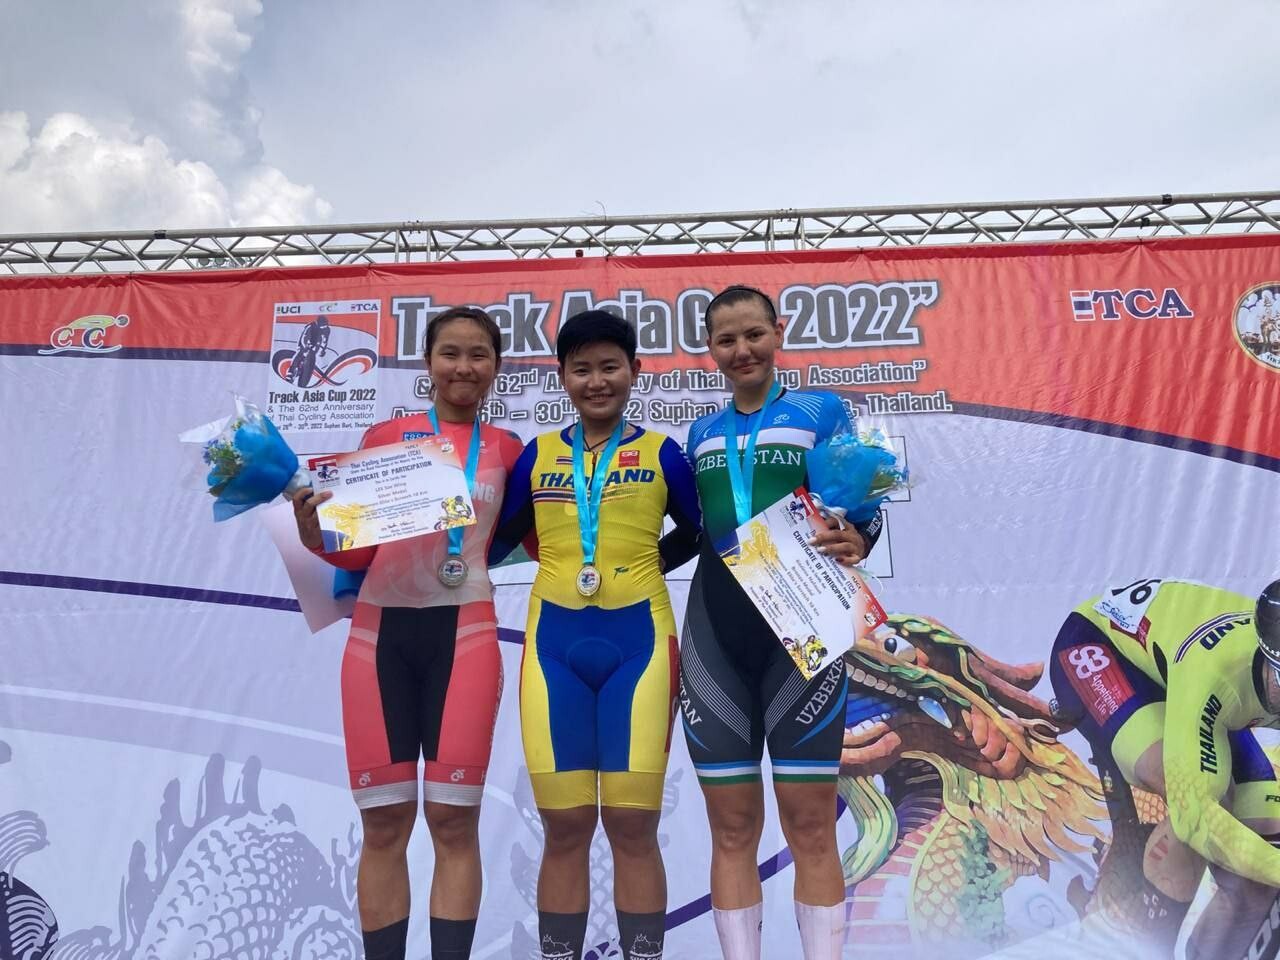 Узбекские велосипедисты завоевали на Кубке Азии в Таиланде 14 медалей